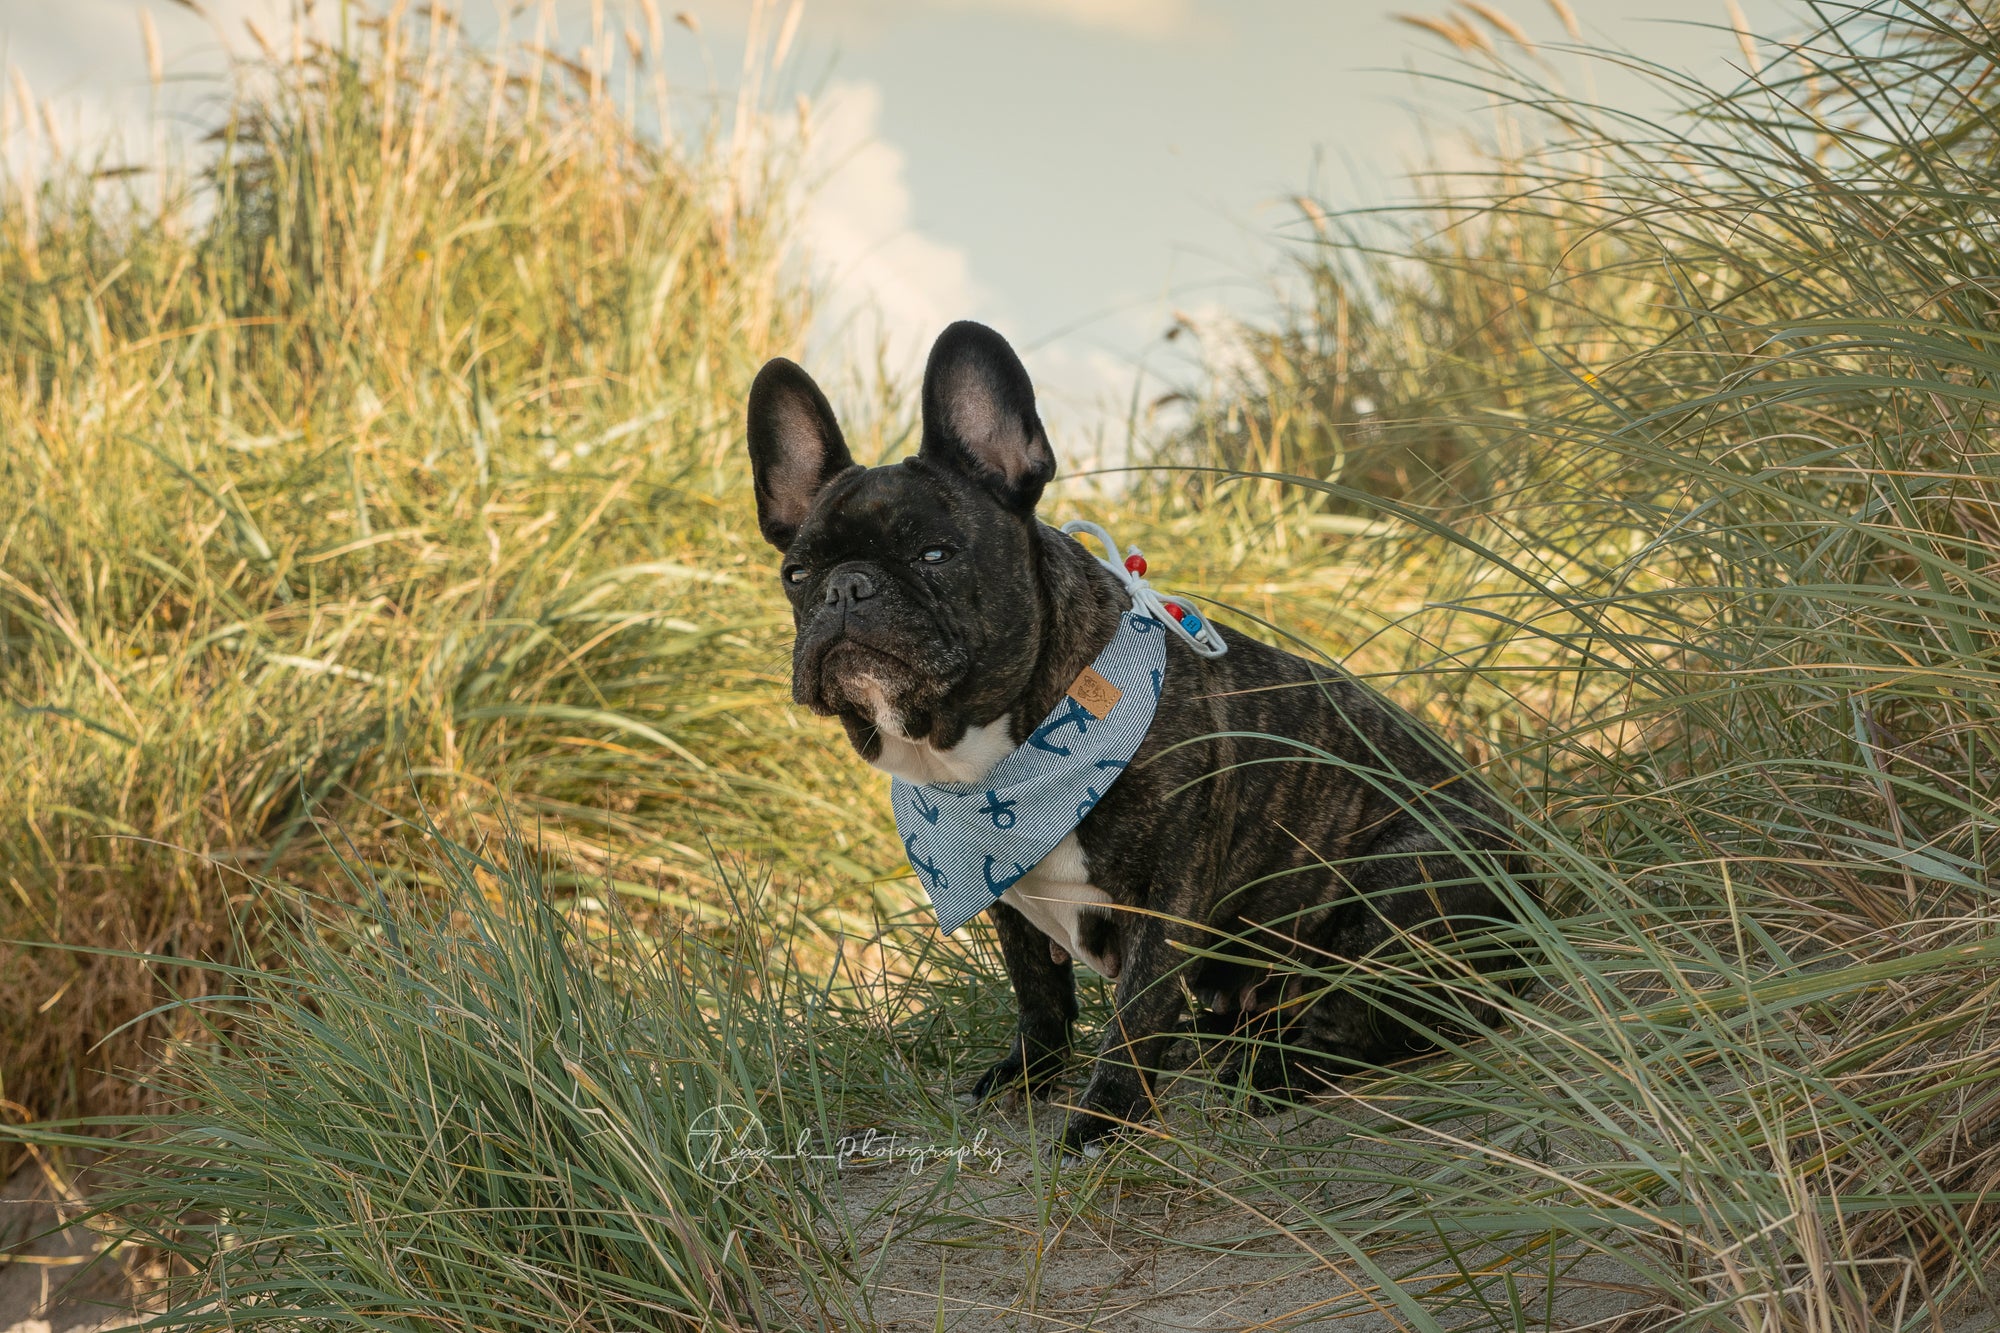 Französische Bulldogge trägt blaues Hundehalstuch zum Binden mit Ankern beim Fotoshooting